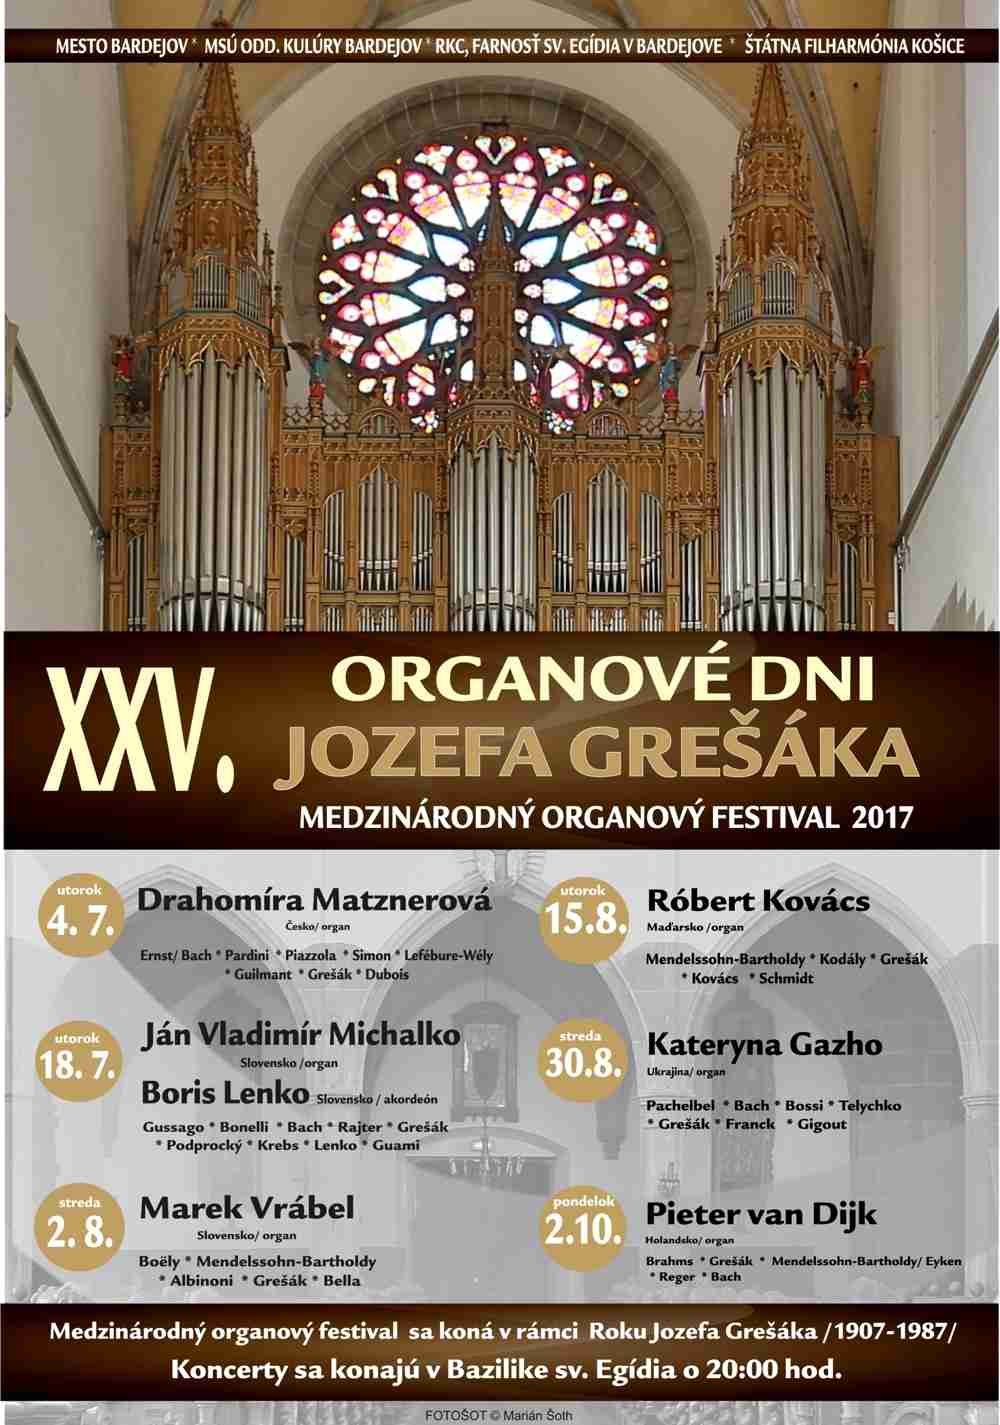 Jubilejný 25. ročník organových dní Jozefa Grešáka